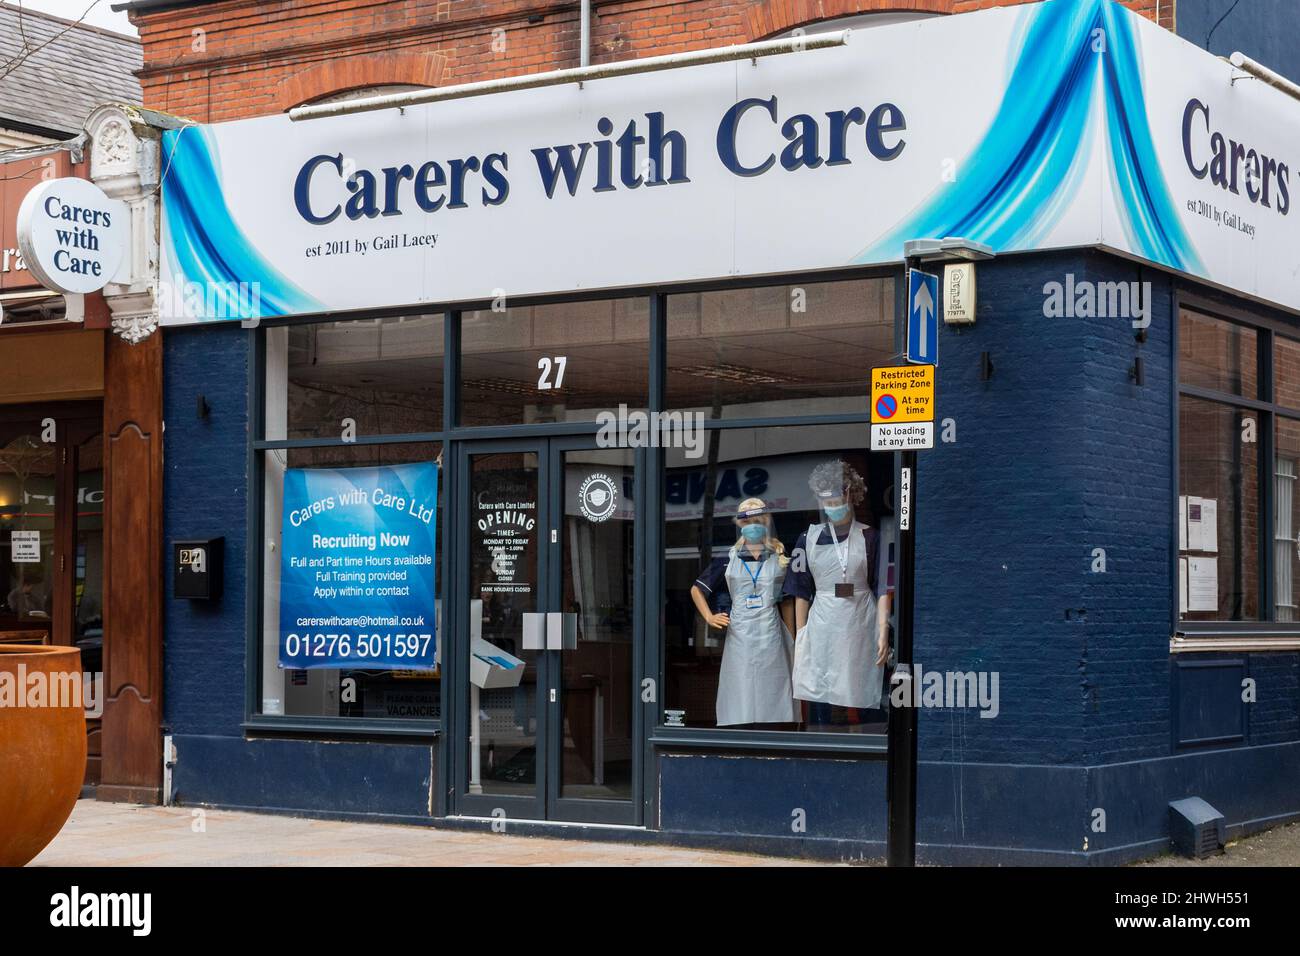 Carers with Care Ltd, sur les lieux de Camberley High Street avec avis sur le recrutement de nouveaux soignants, Surrey, Angleterre, Royaume-Uni Banque D'Images